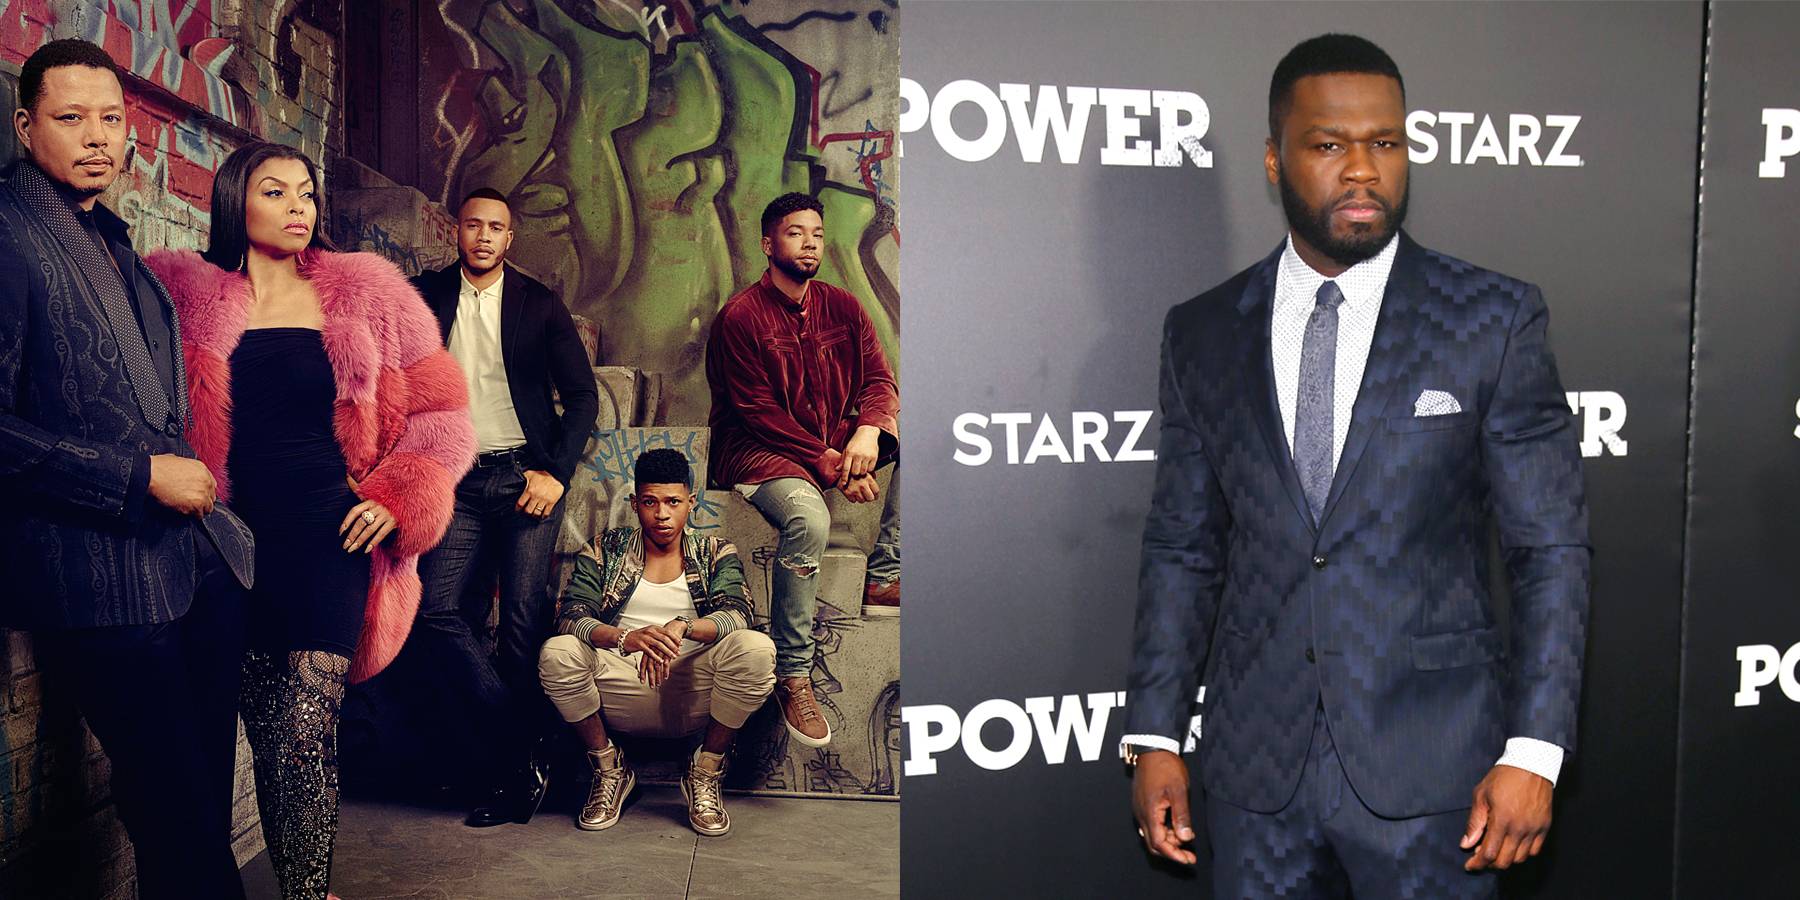 Power' premiere: 50 Cent performs, Starz cast celebrates final season